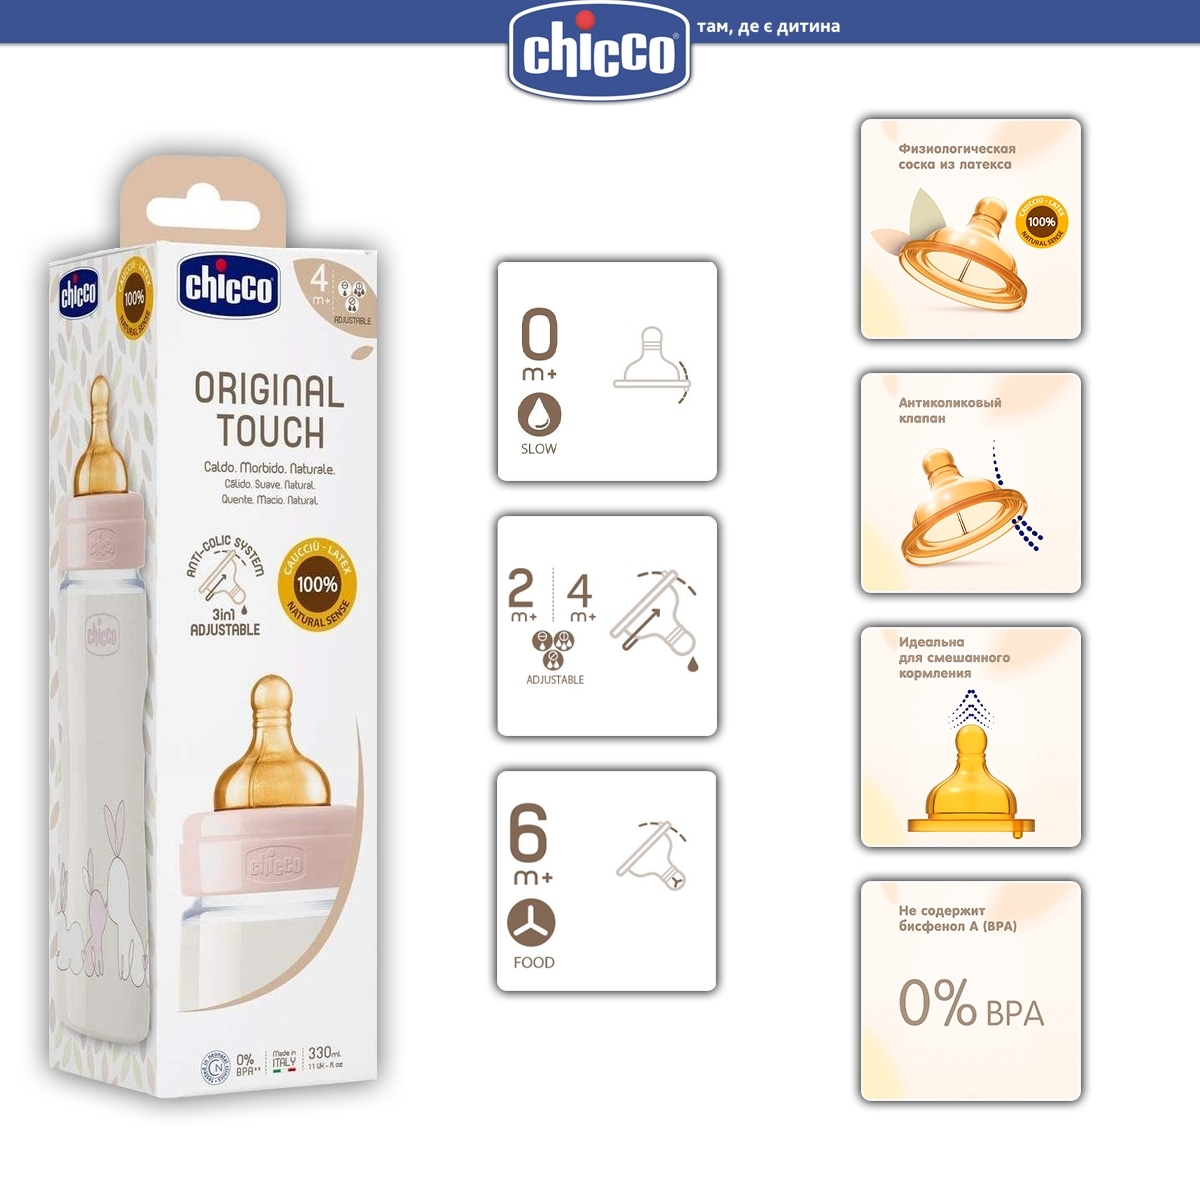 Соска Chicco Original Touch, латекс, переменный поток, 2м+, 2 шт. (27832.00) - фото 4